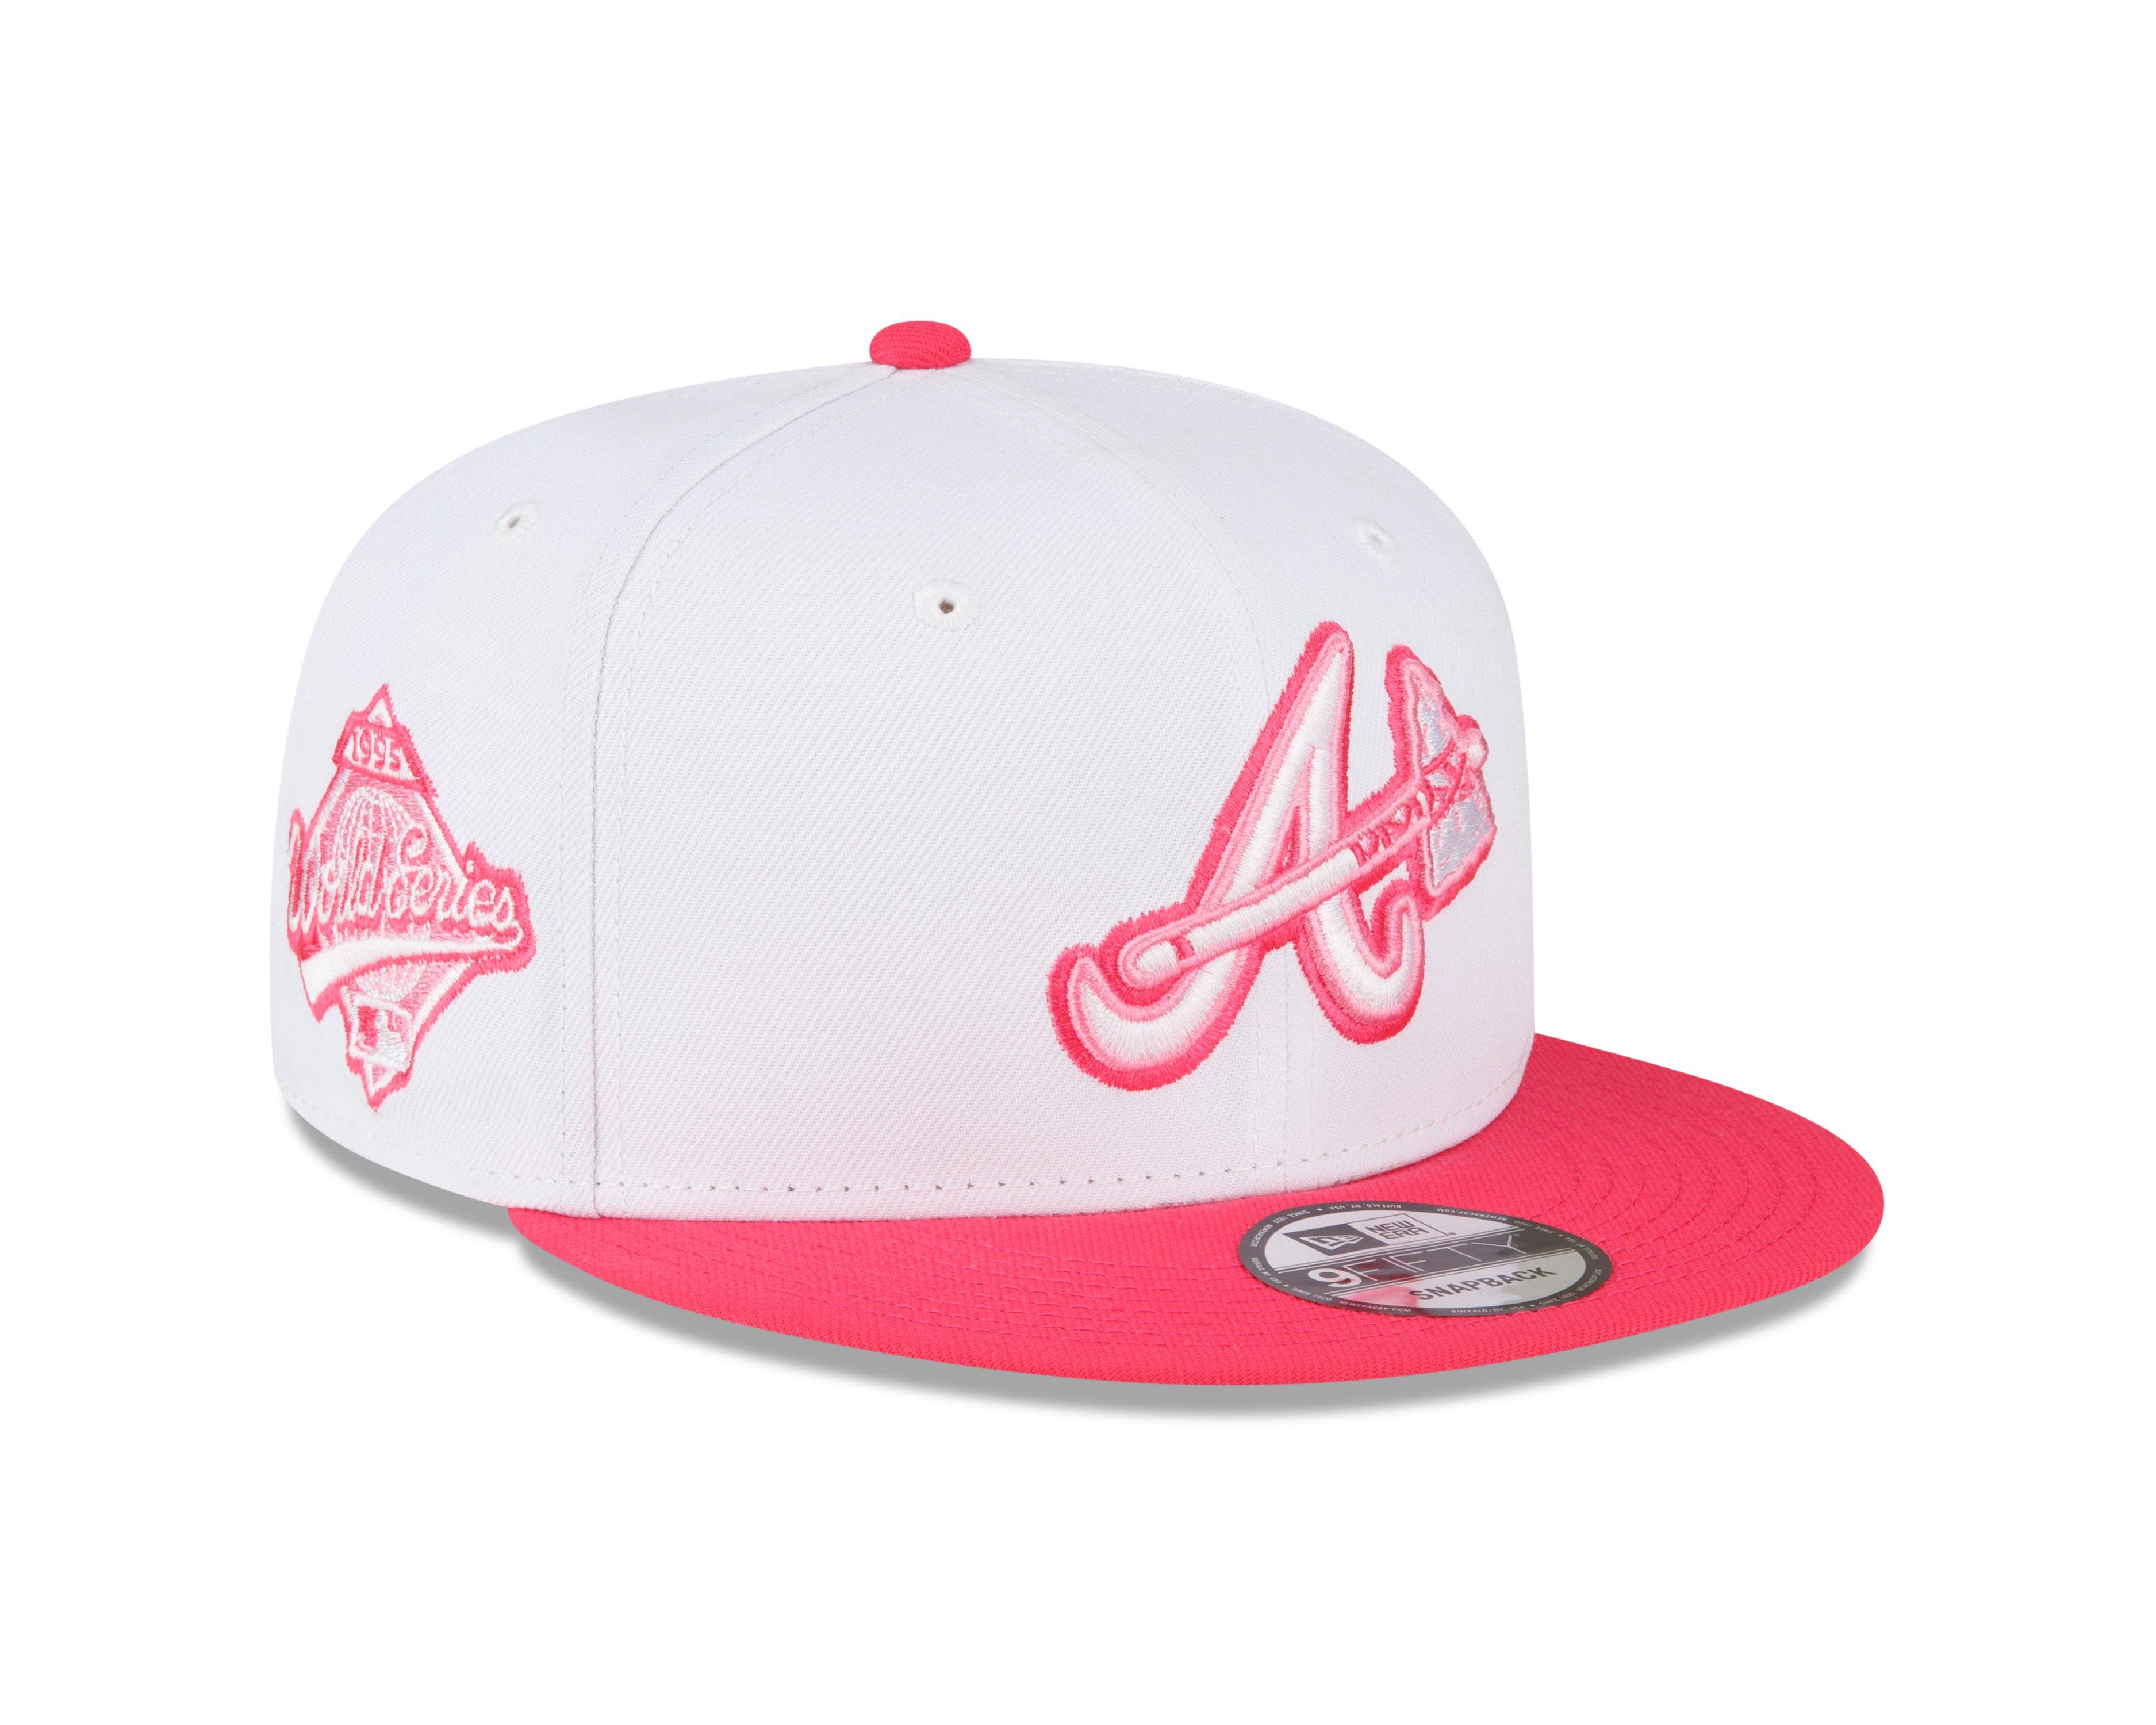 404 Signature Braves WS Hat